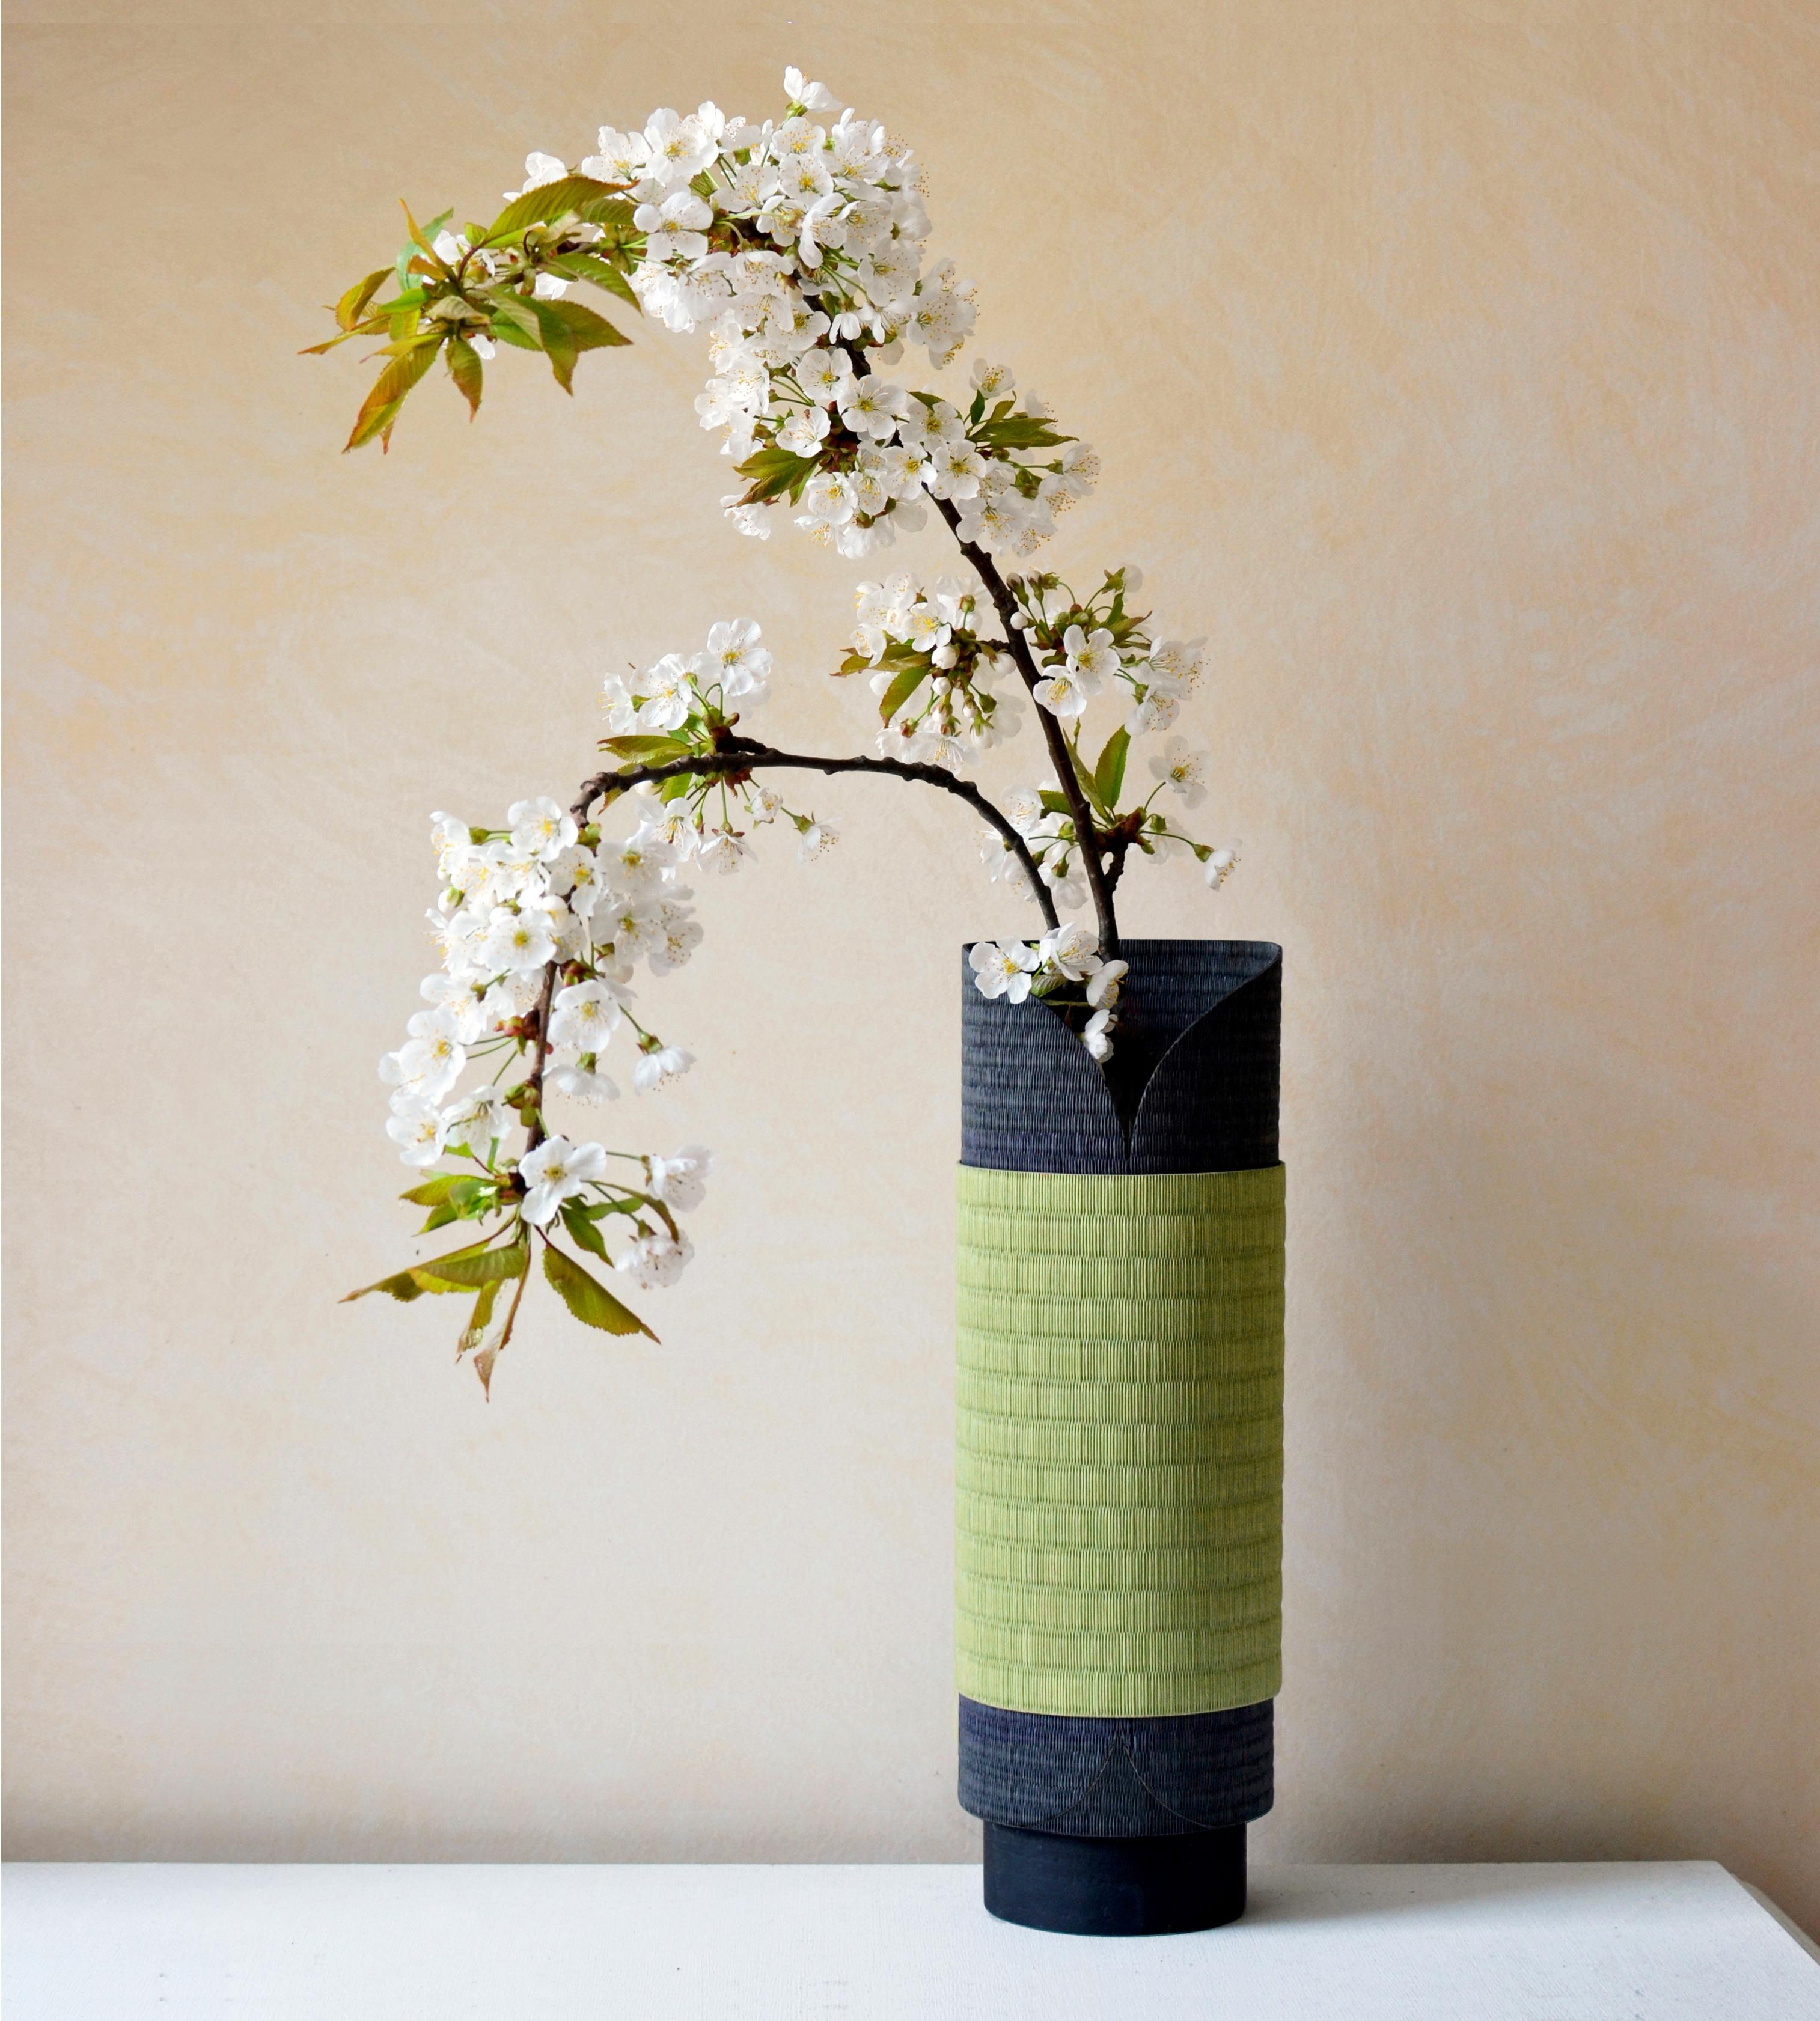 Yugen-Vase von Astrid Hauton
Abmessungen: D 11,5 x H 35 cm
MATERIALIEN: gewebtes Washi-Papier, gewachstes schwarzes Valchromat.

